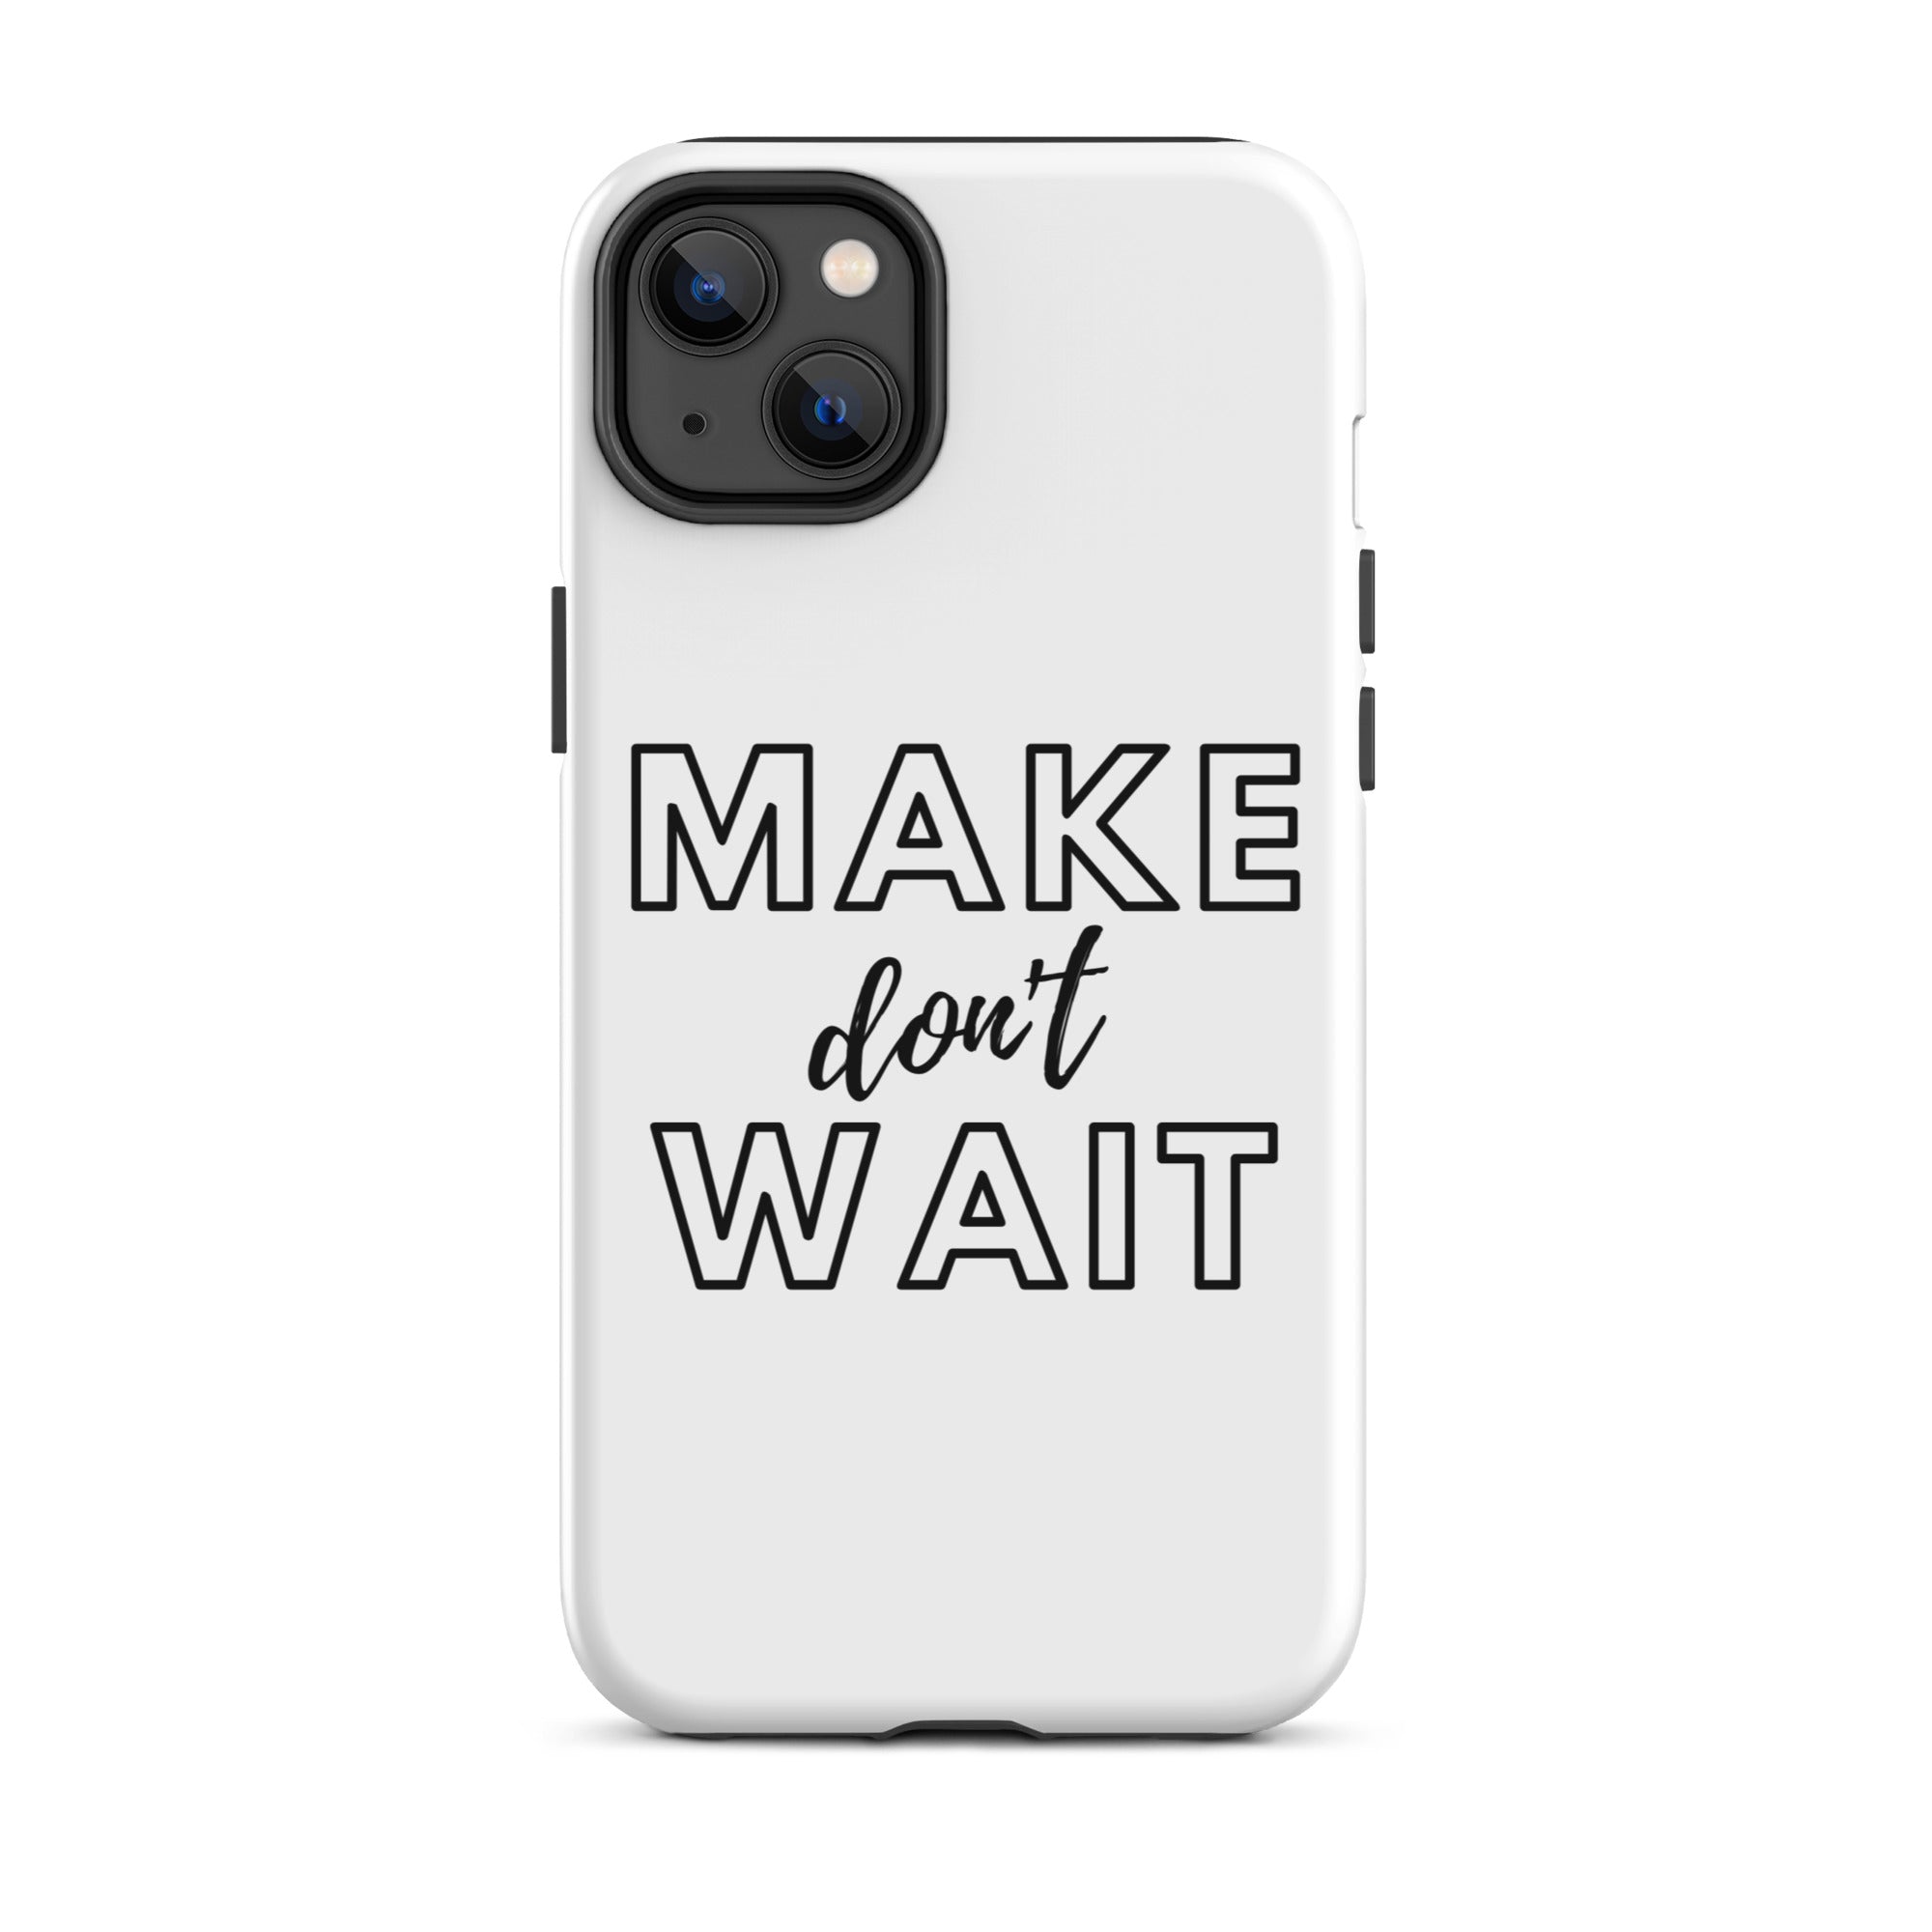 Make don't Wait - Tough iPhone case